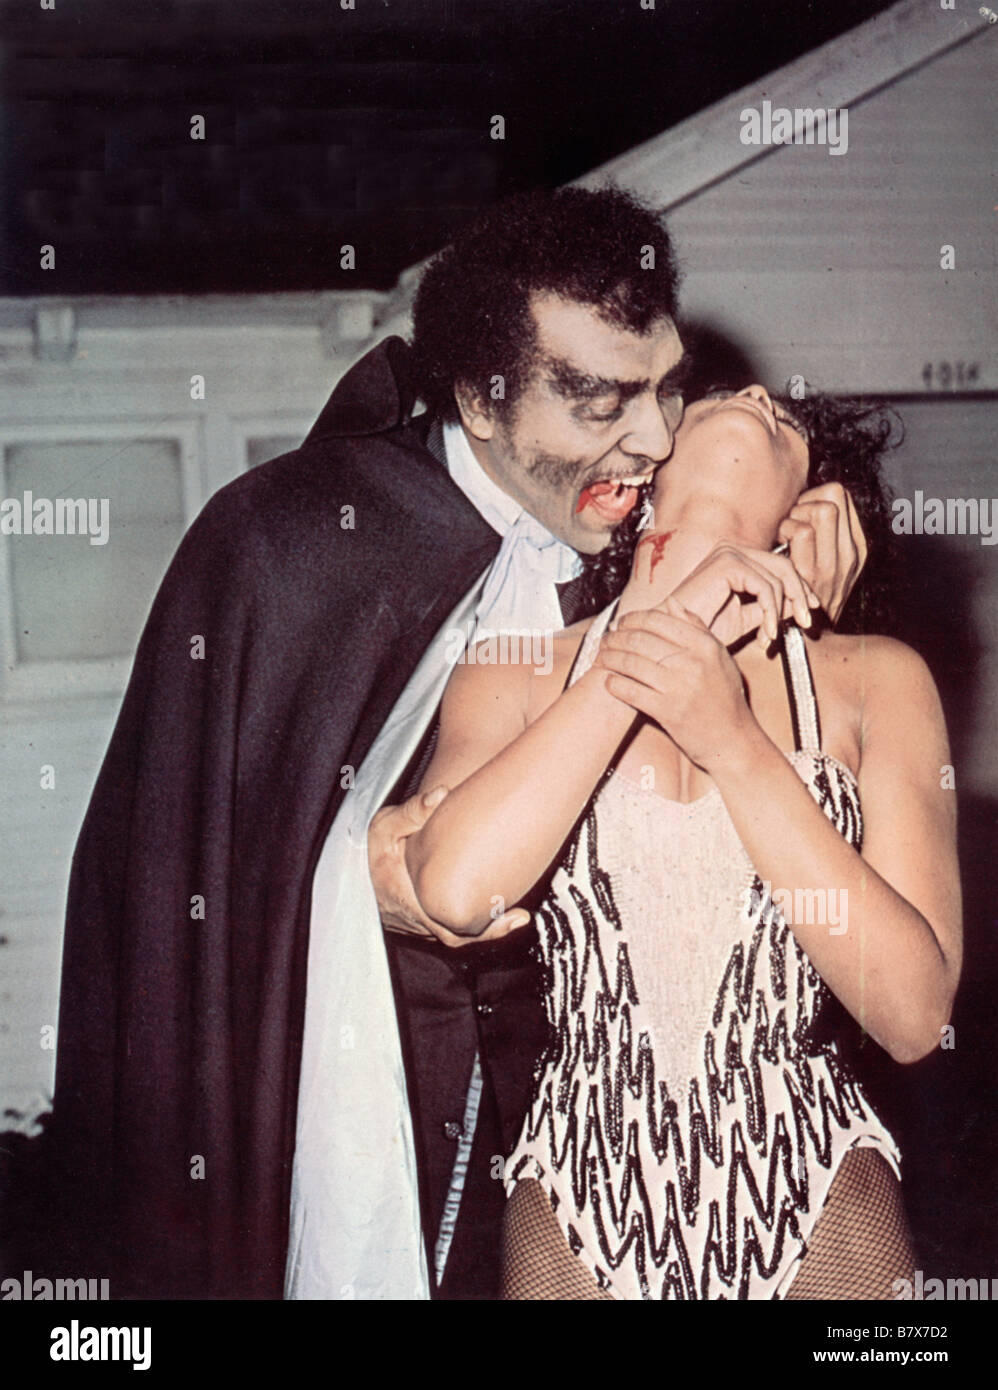 Blacula, le vampire noir Blacula Año: 1972 EE.UU. William Marshall Director: William Crain Foto de stock